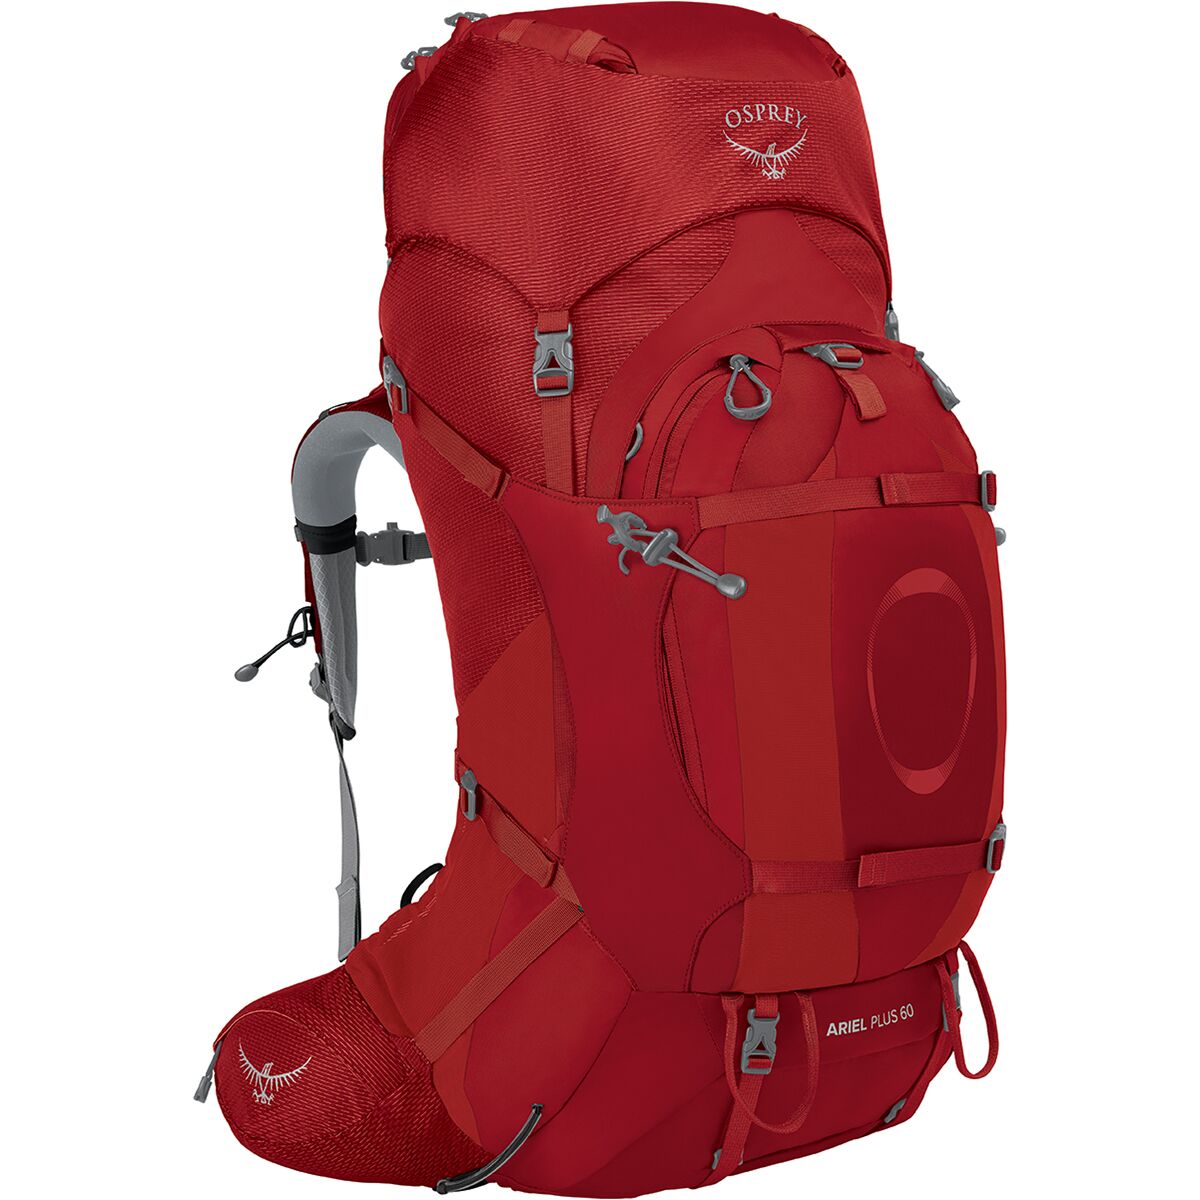 Osprey Packs Ariel Plus 60L Backpack - Women's